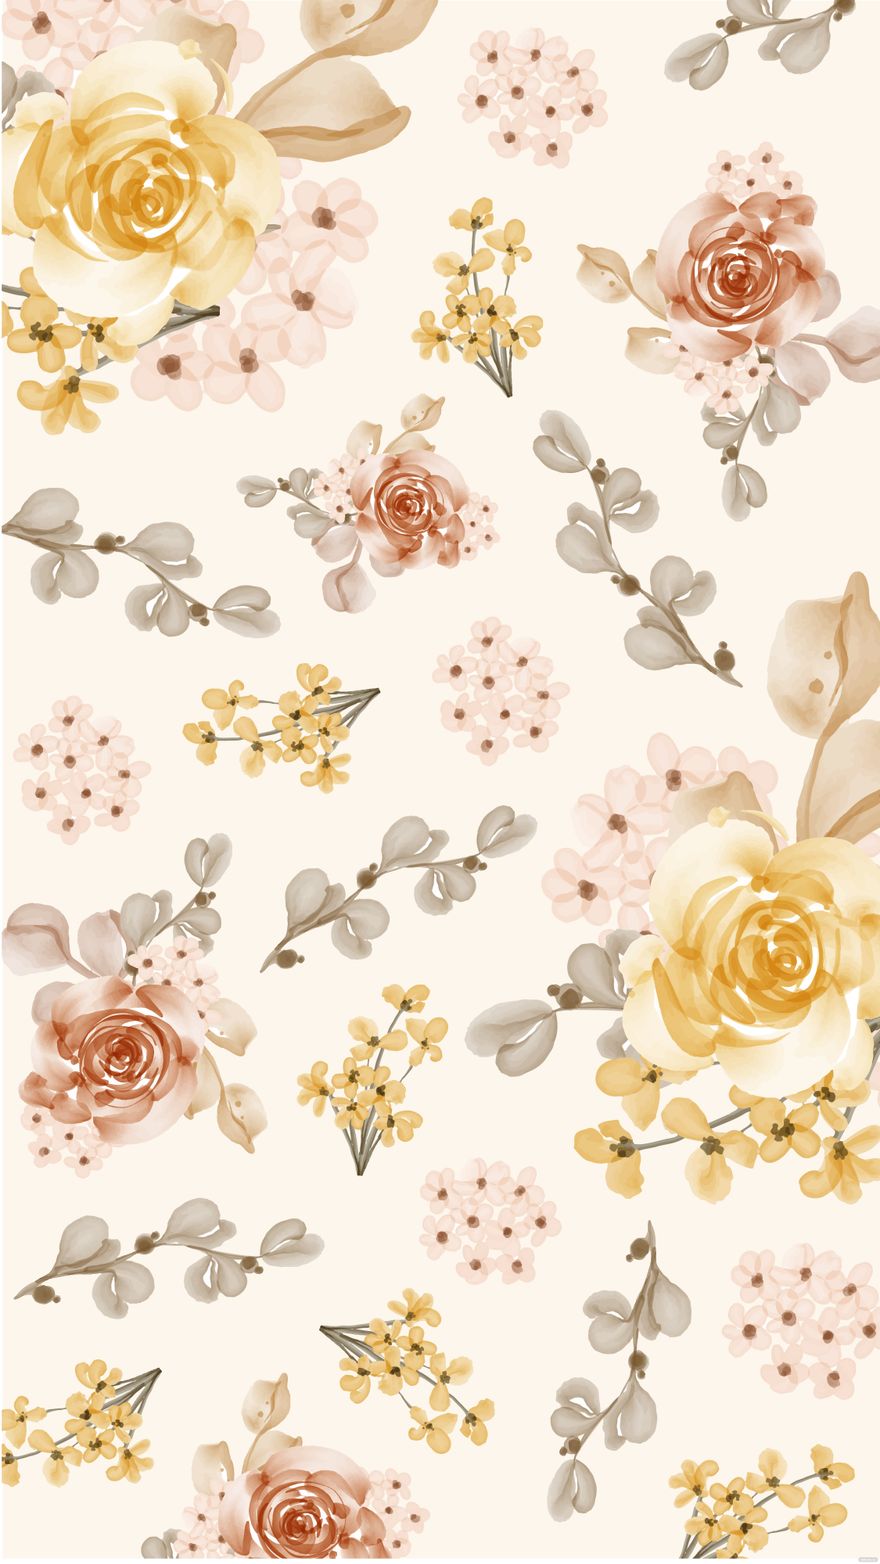 Free Decorative Wedding Floral Background in Illustrator, EPS, SVG, JPG, PNG